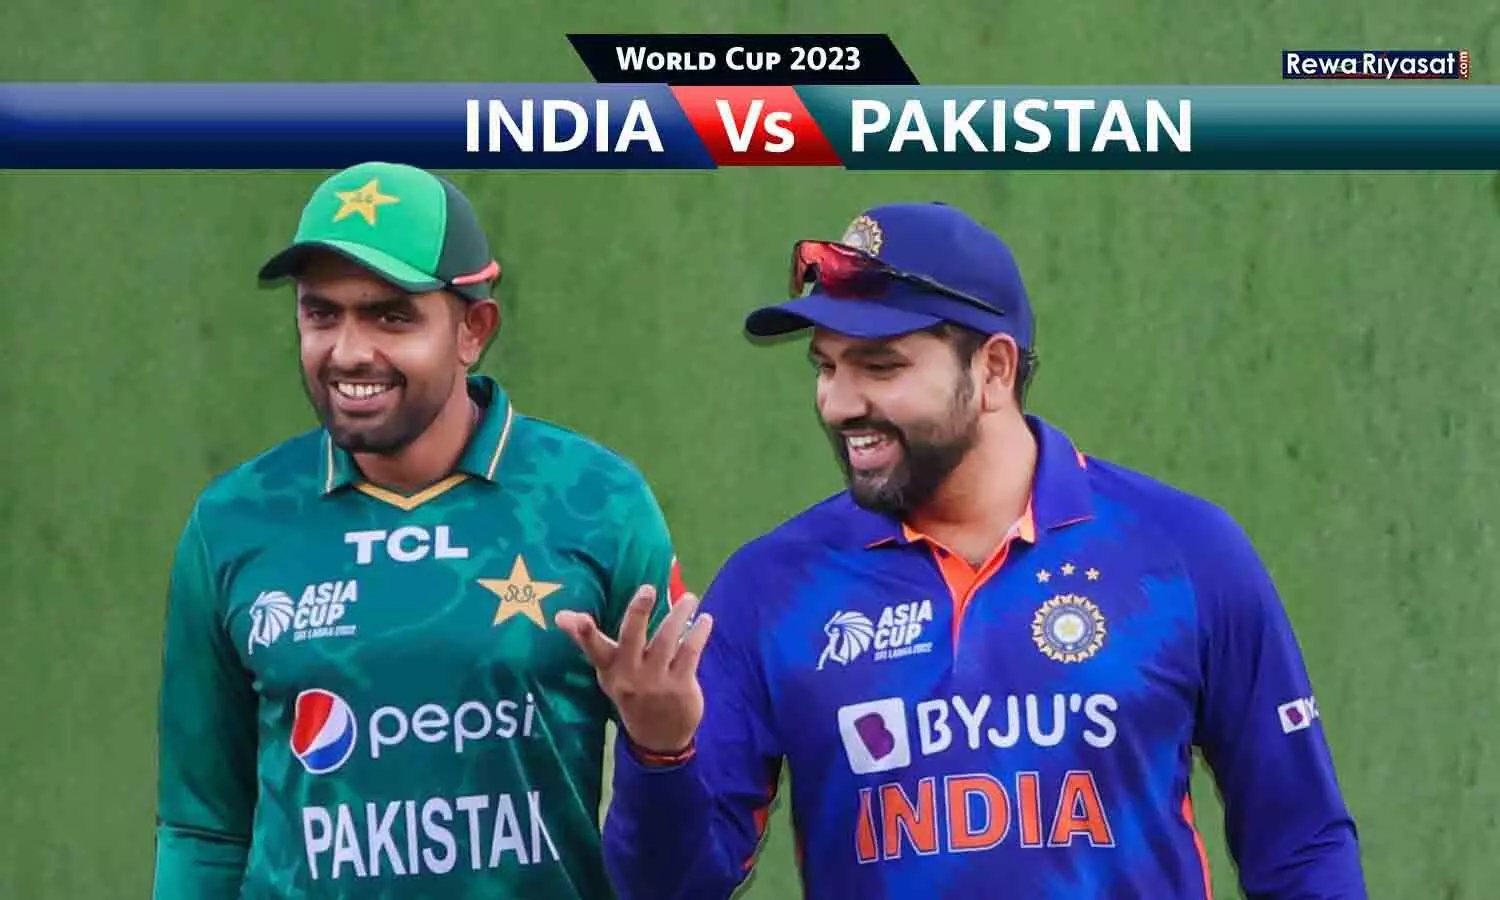 वर्ल्ड कप में टीम इंडिया ने पाकिस्तान को 8वीं बार हराया: 192 का टारगेट 31 ओवर में चेज; रोहित ने 86 रन बनाए, भारत के 5 गेंदबाजों ने 2-2 विकेट लिए